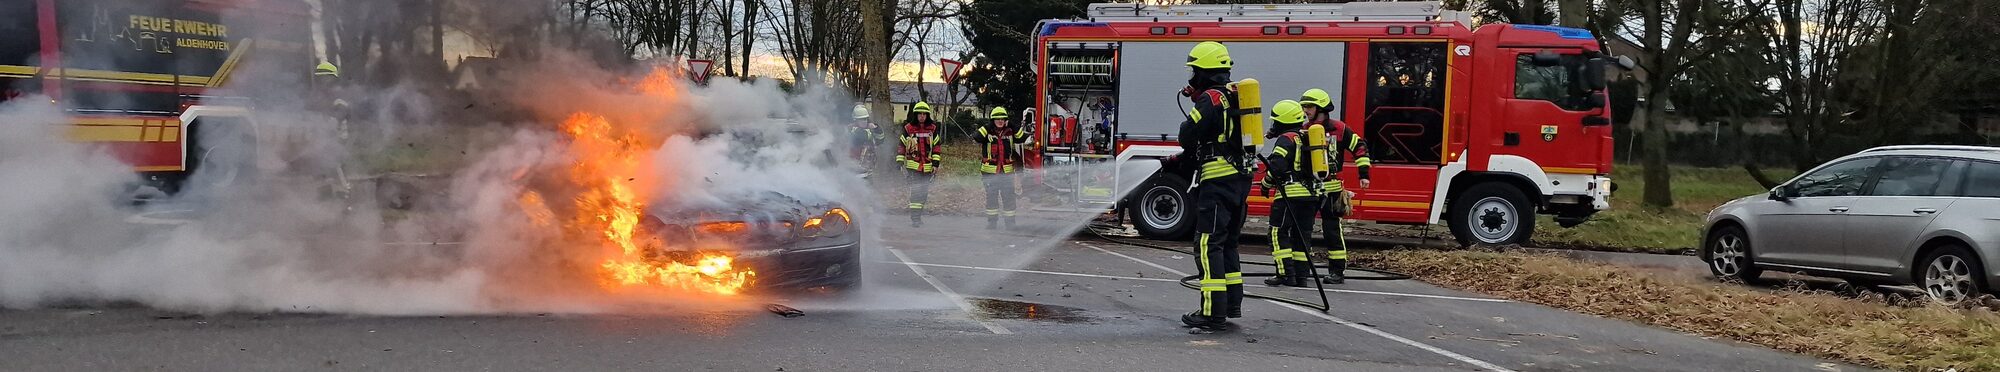 Feuerwehreinsatz Aldenhoven